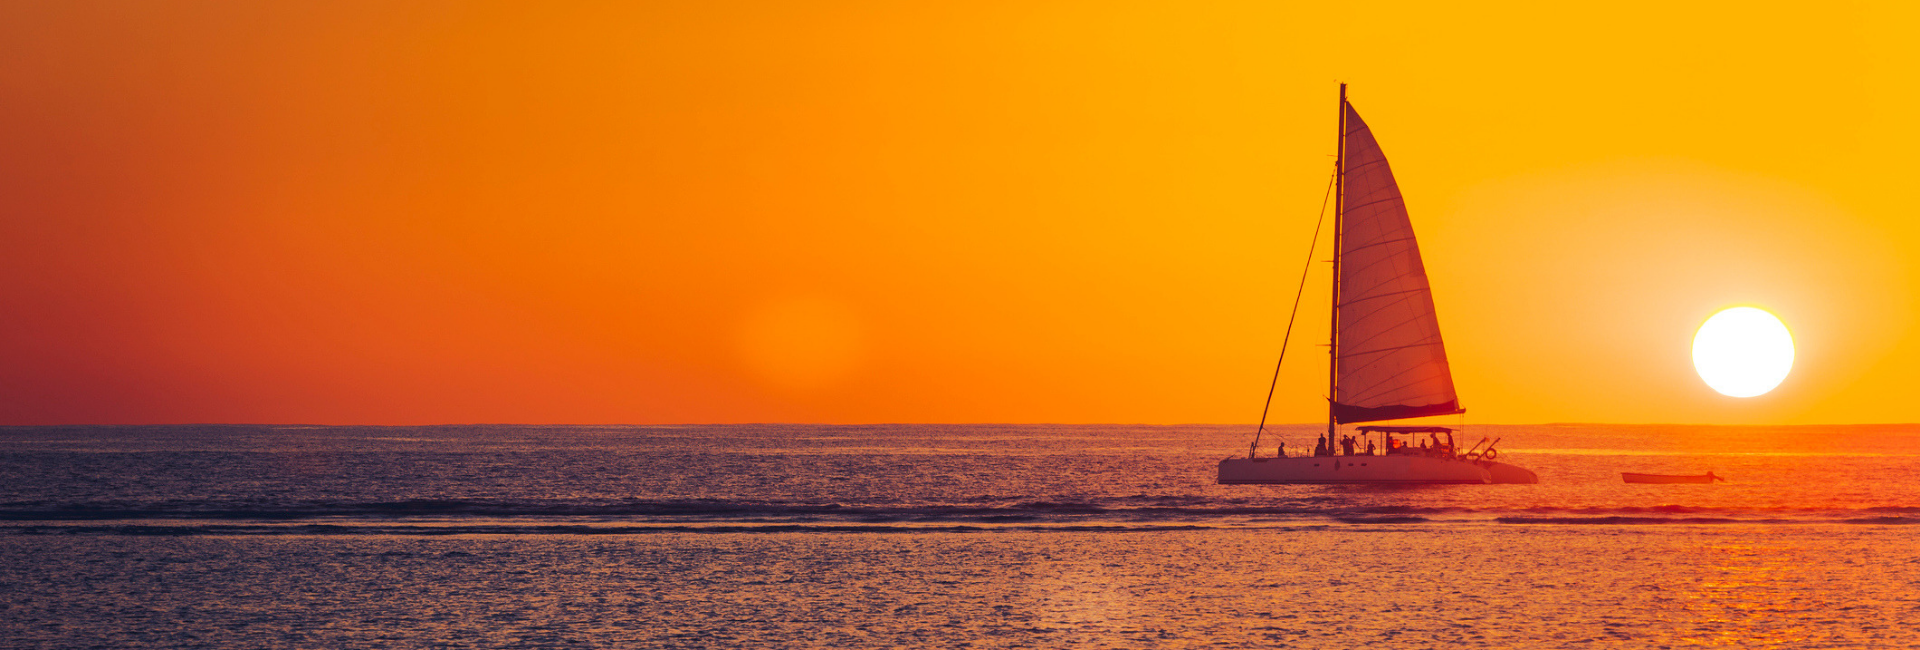 smooth sailing sunrise photo